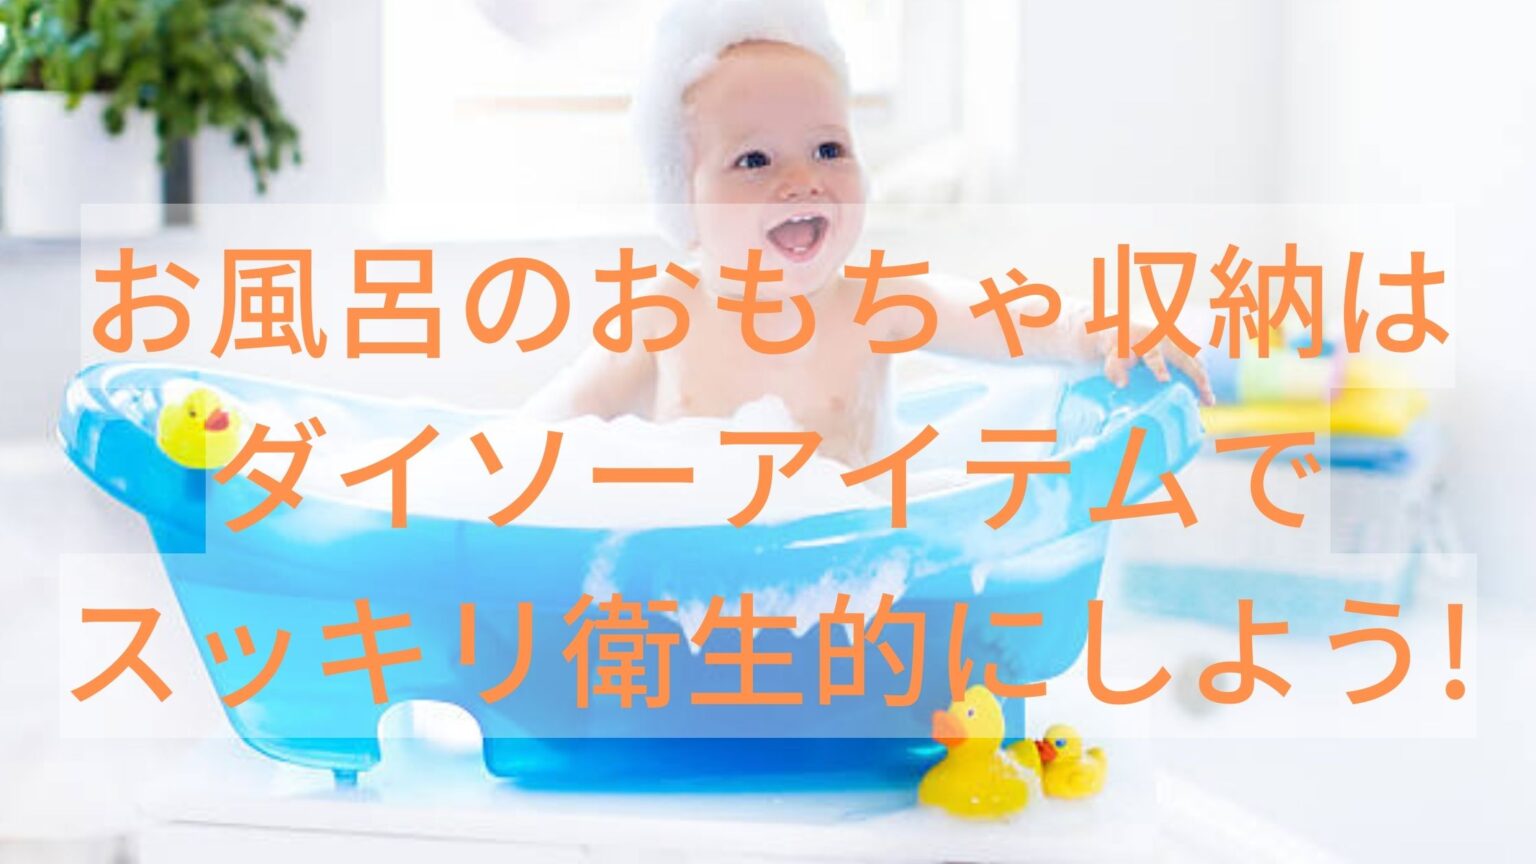 お風呂のおもちゃ収納はダイソーアイテムでスッキリ衛生的にしよう!